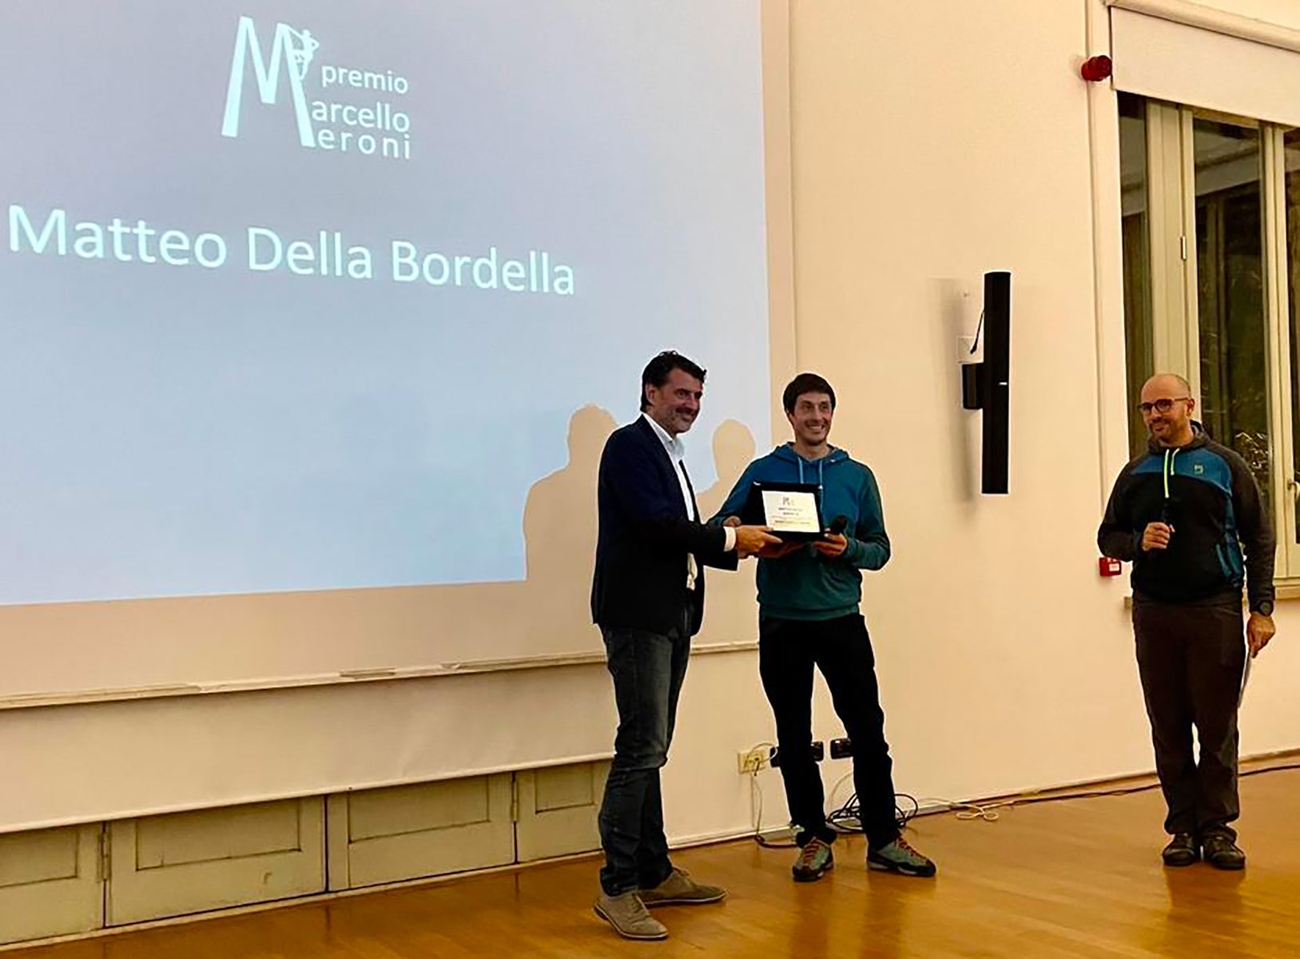 Matteo Della Bordella, premio Marcello Meroni,